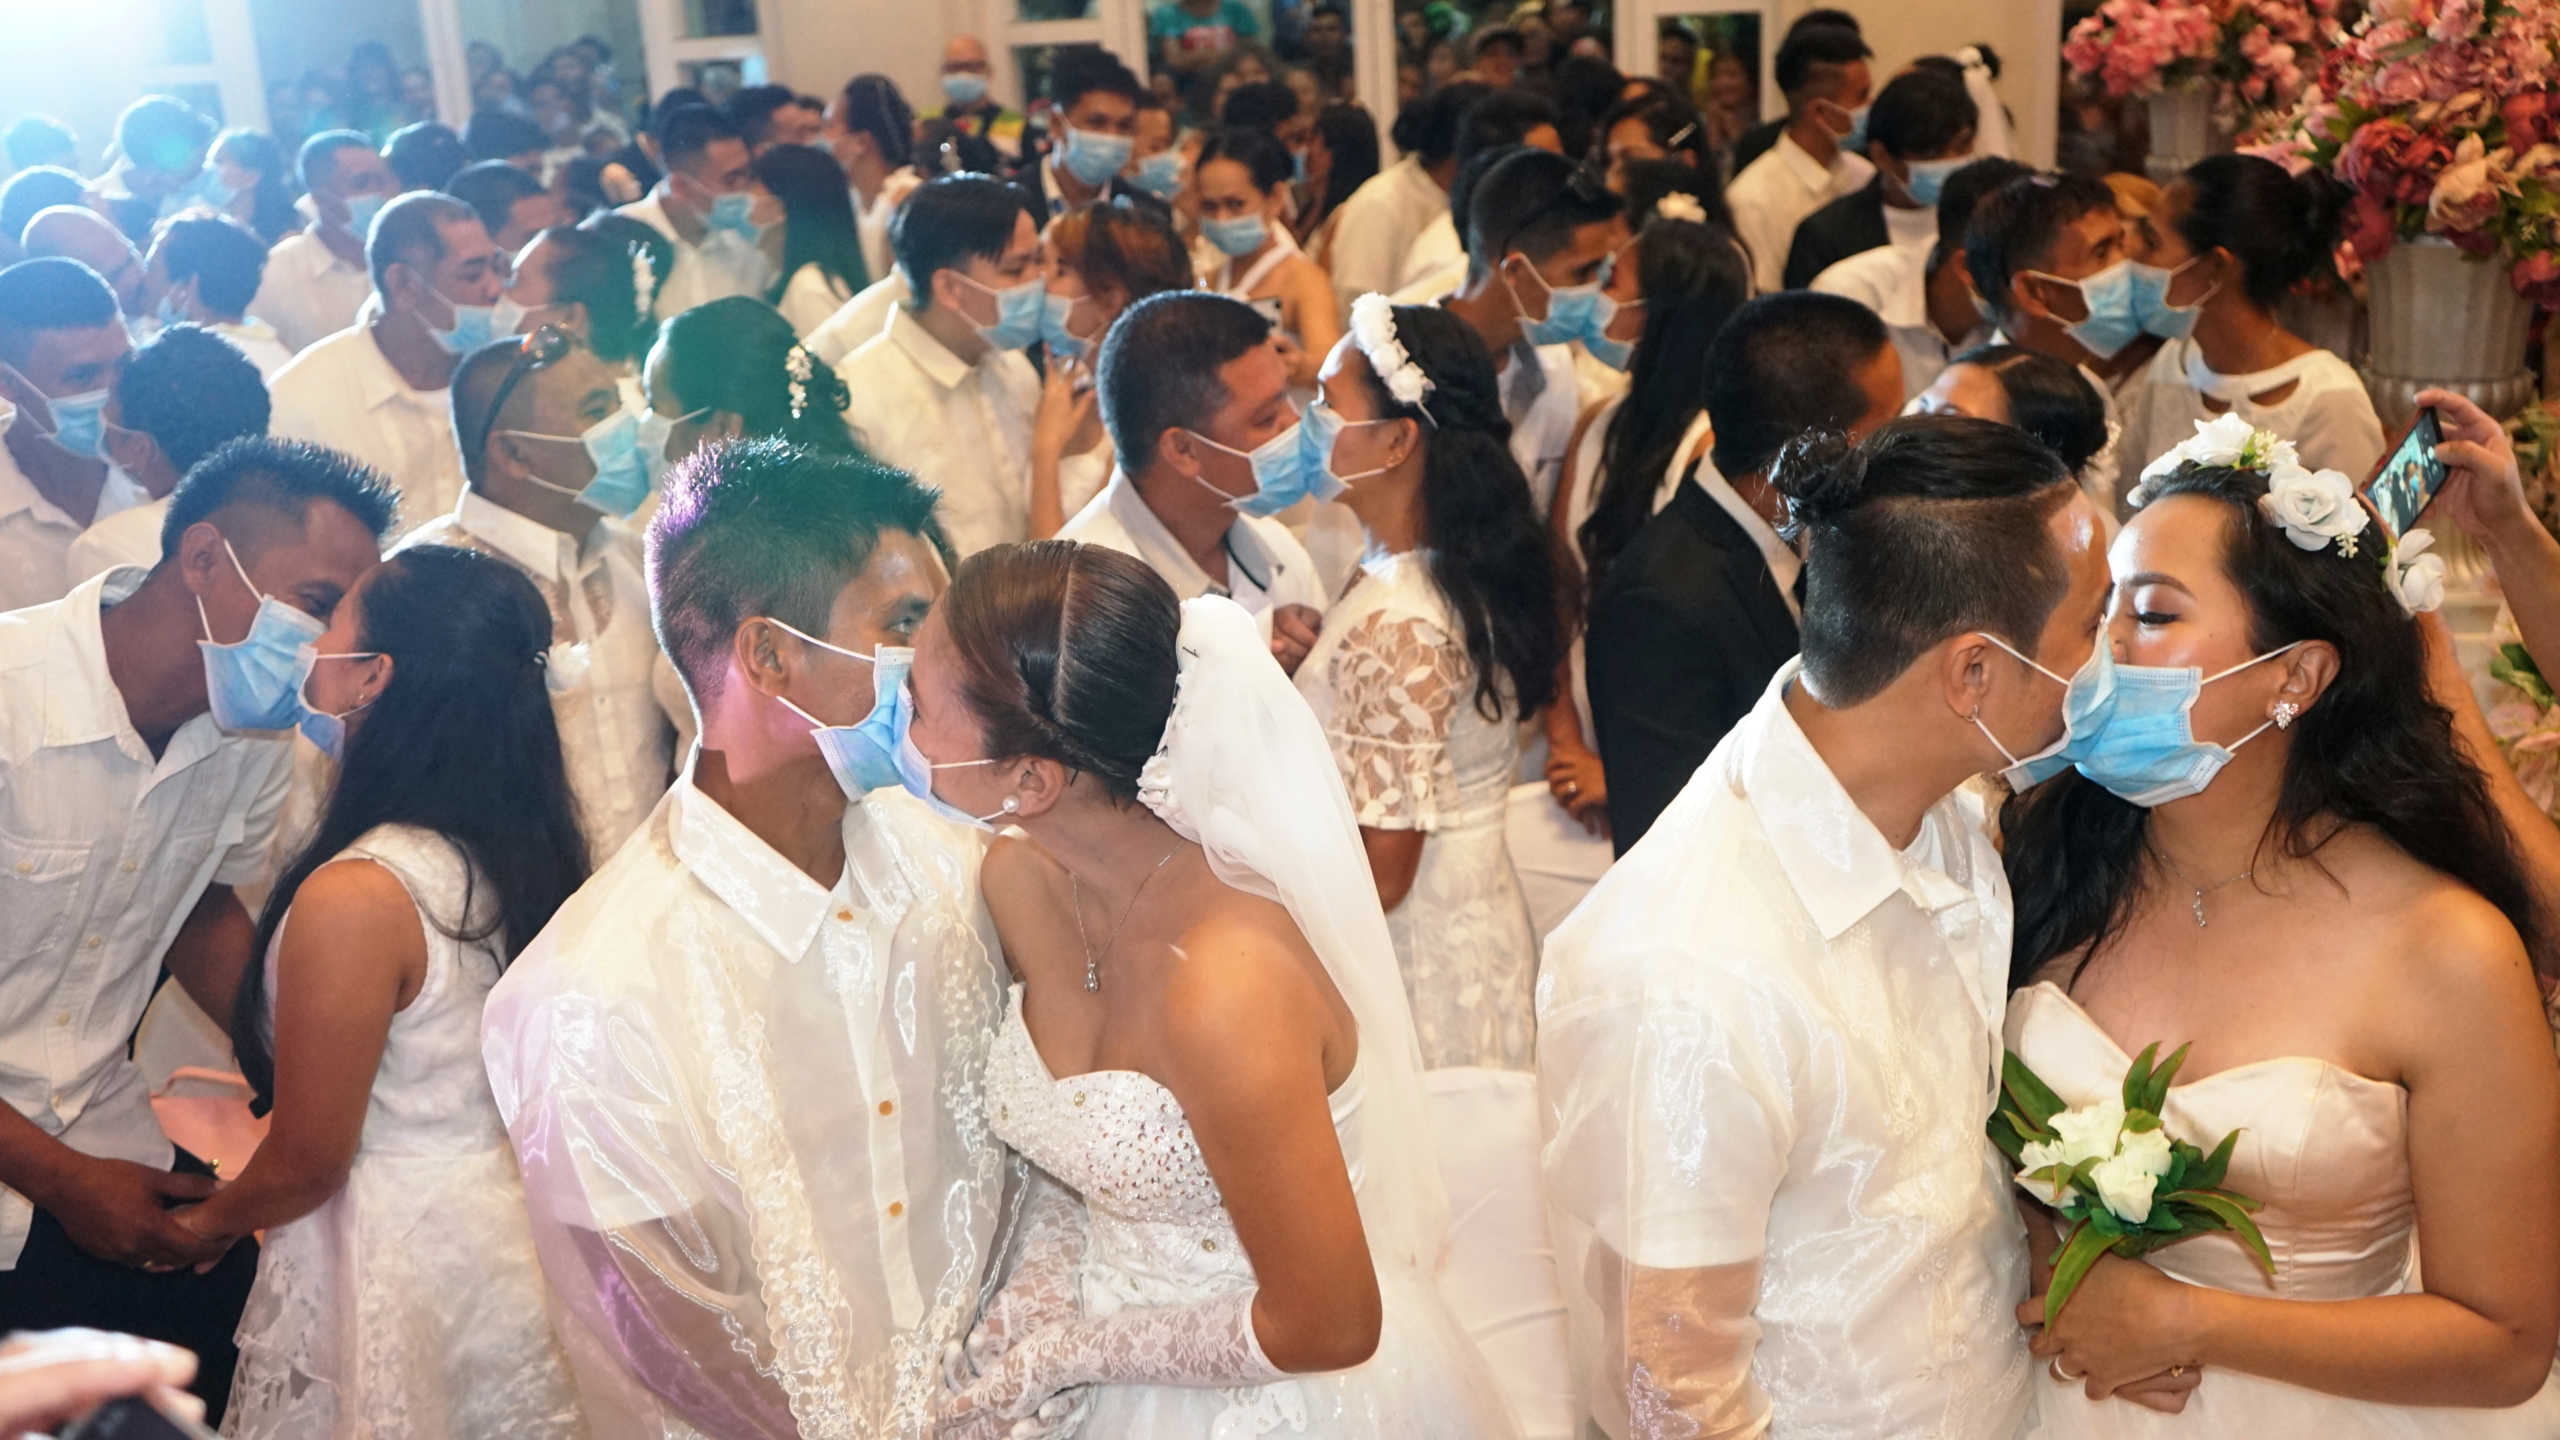 Φιλιππίνες: Ζευγάρια αψηφούν τον κοροναϊό και ανταλλάσσουν γαμήλιους όρκους